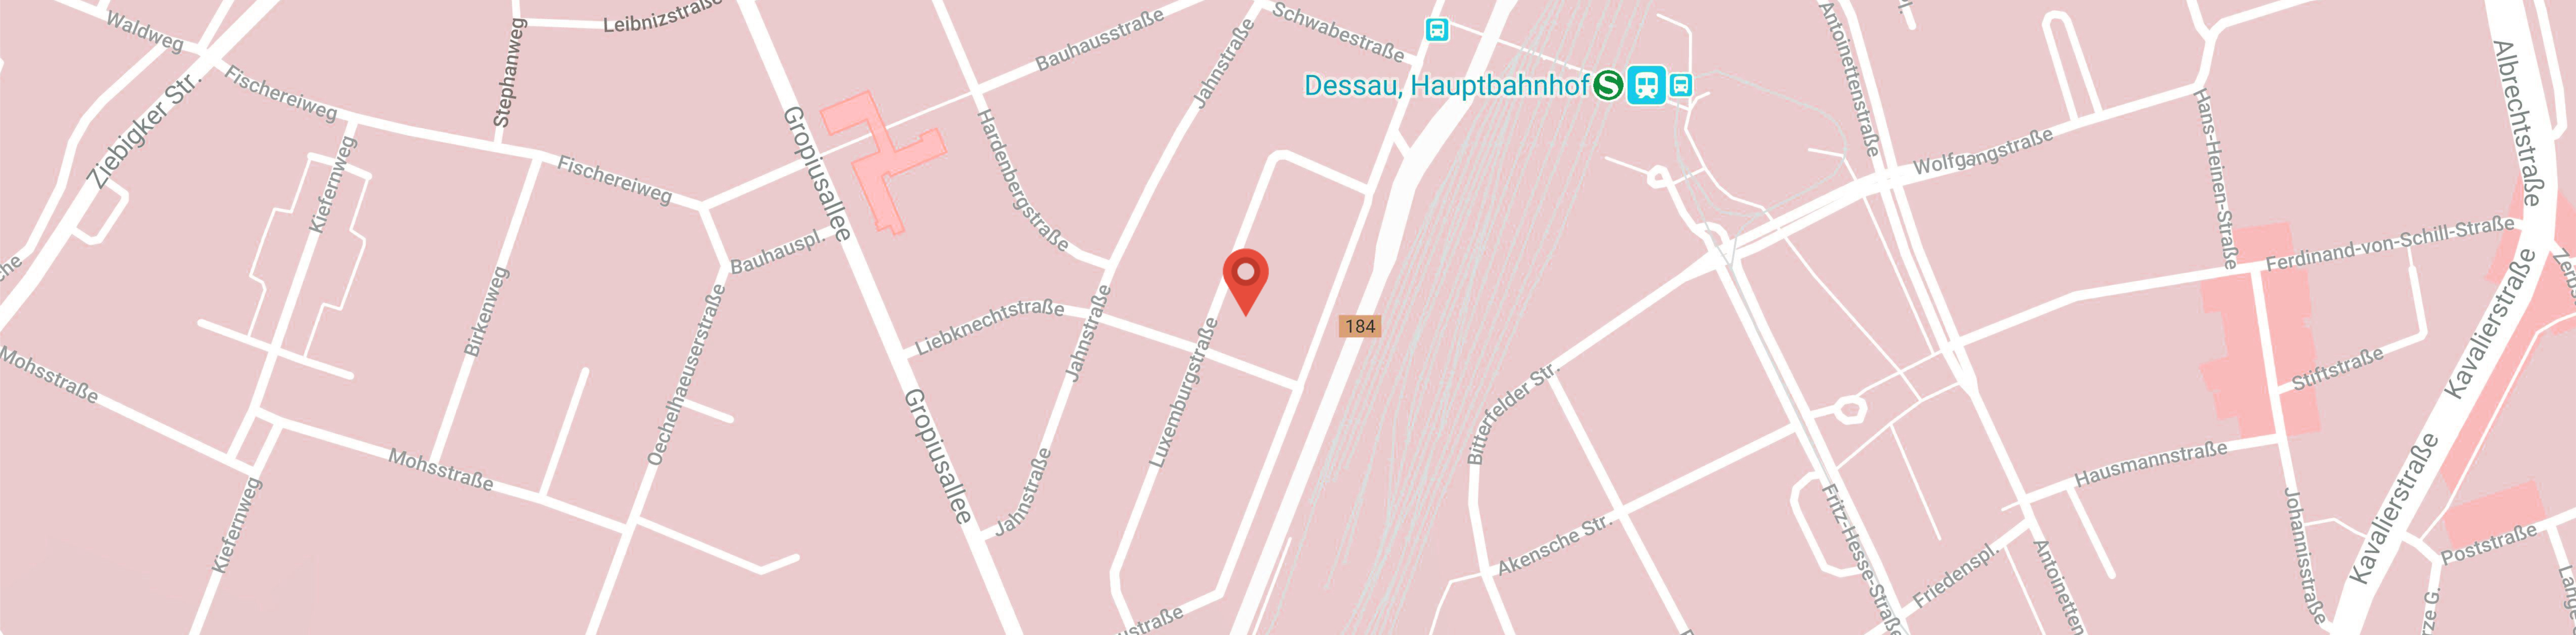 Advertise Dessau in Google Maps finden.